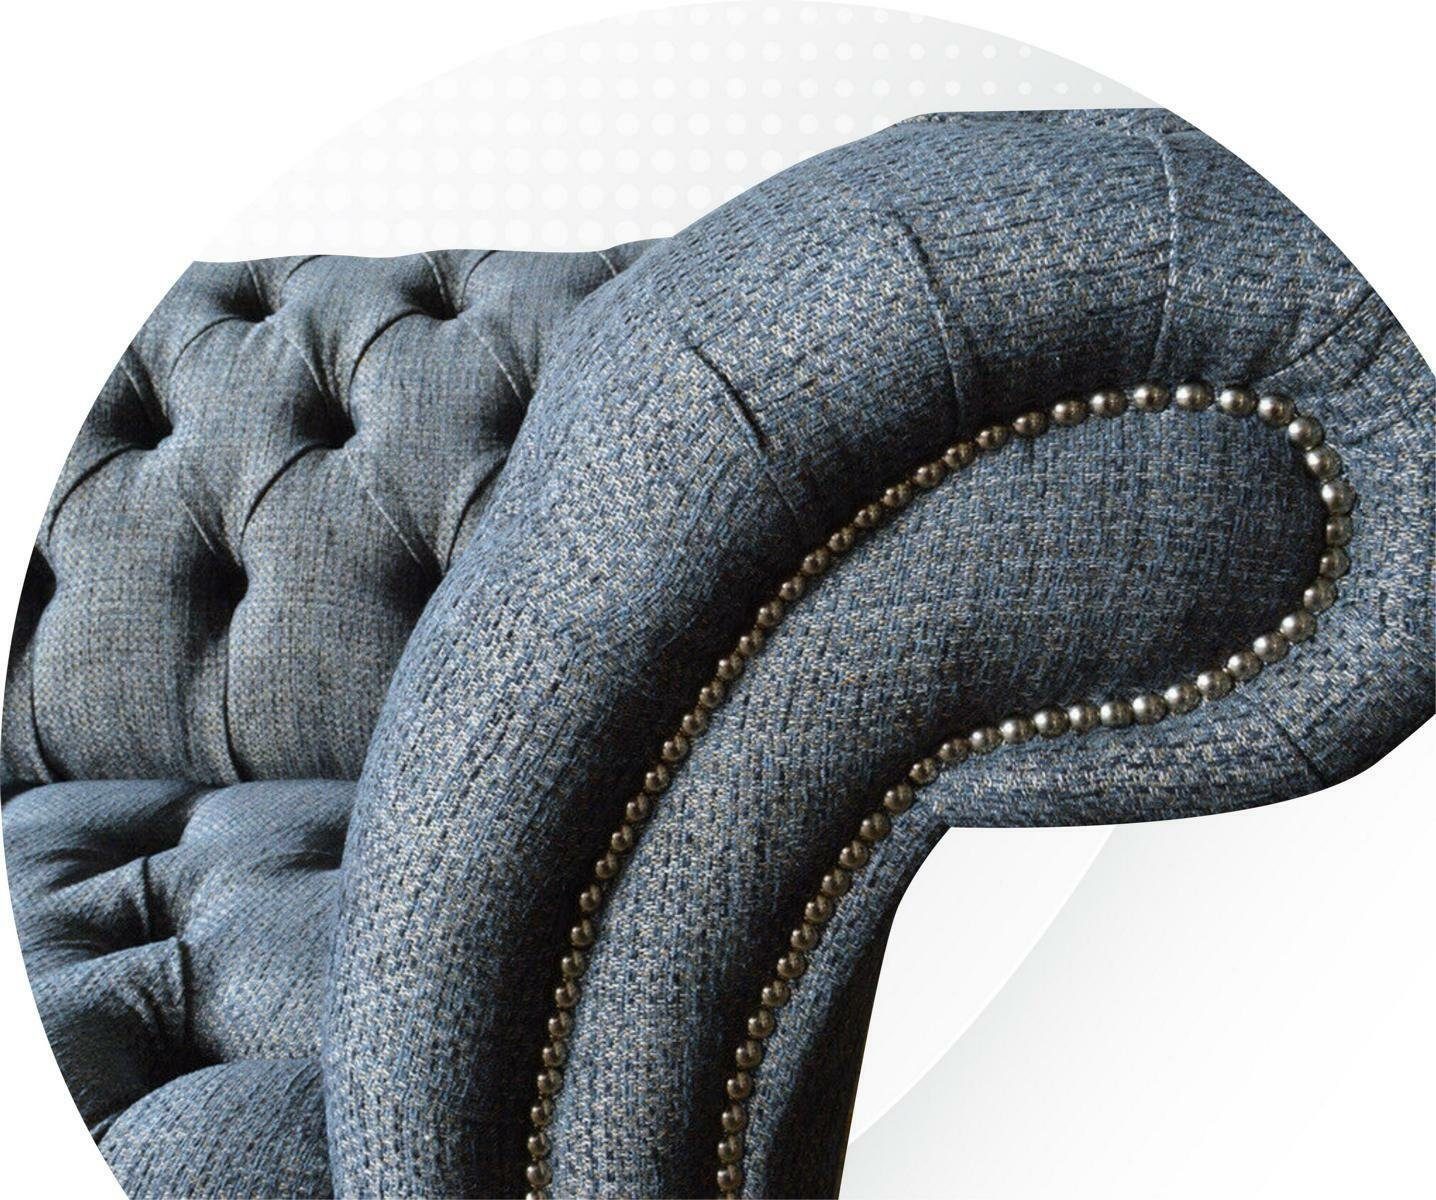 in JVmoebel Chesterfield-Sofa Europe Made 3-er Design Dreisitzer Moderner Chesterfield Neu, Möbel Luxus